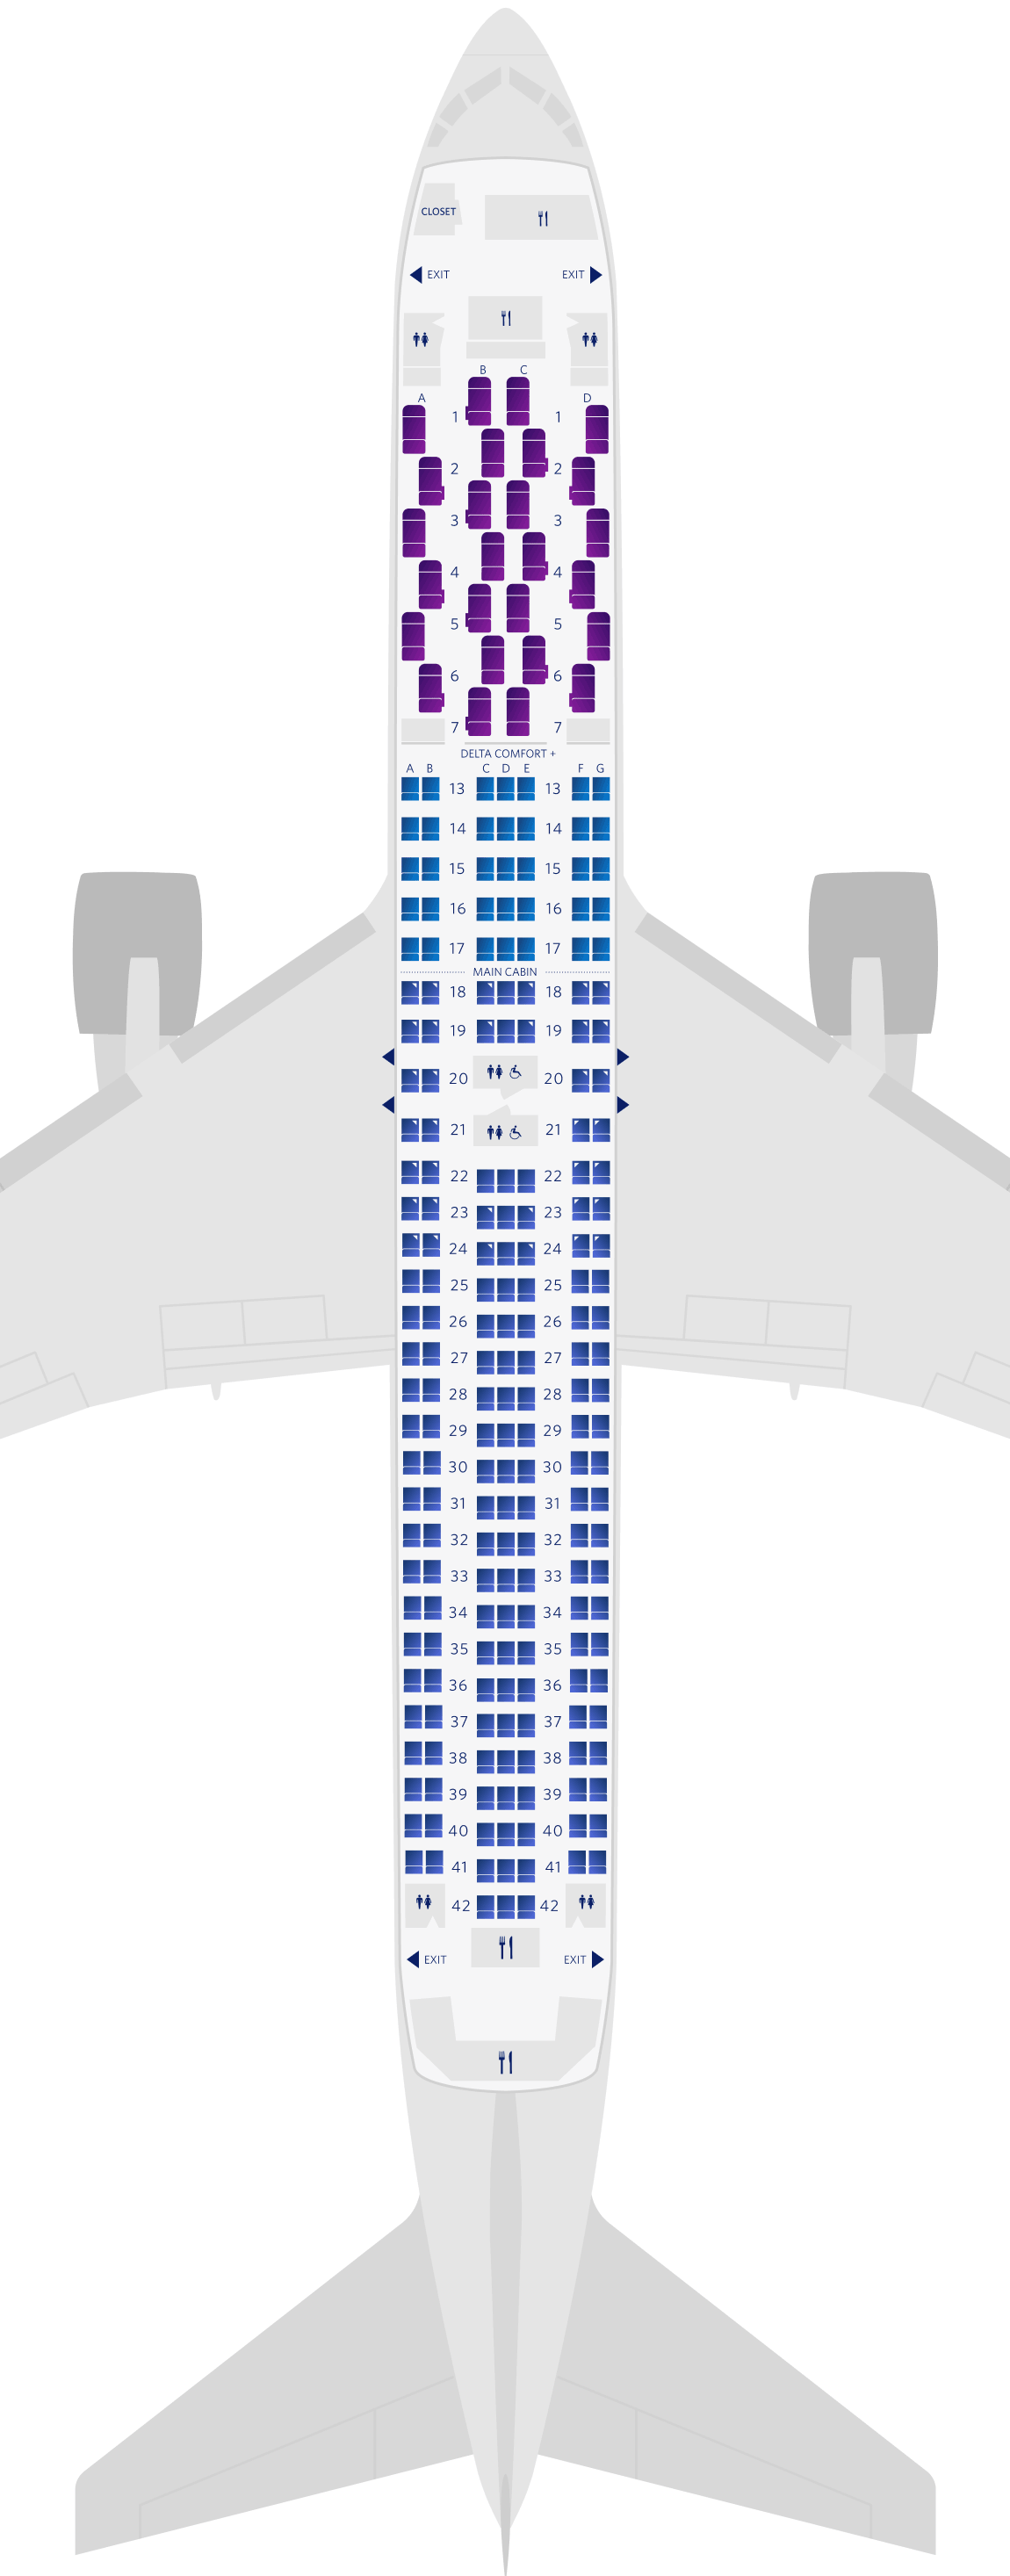 Boeing 767-300ER (76Z) Seat Map